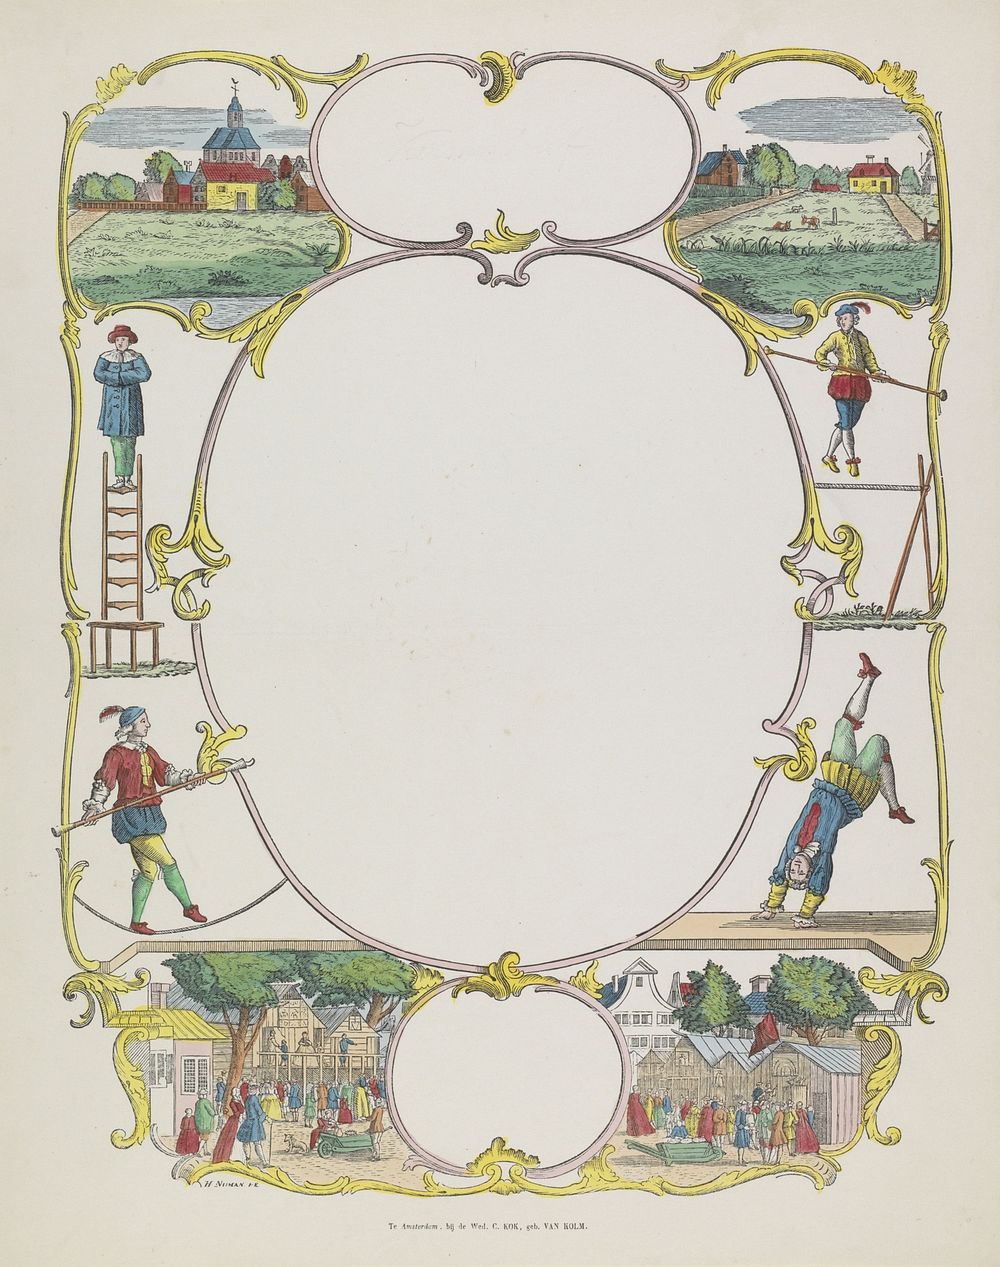 Wensbrief met een dorp, acrobaten en een kermis (1842 - 1866) by Hermanus Numan, Hendrik Numan and weduwe C Kok van Kolm